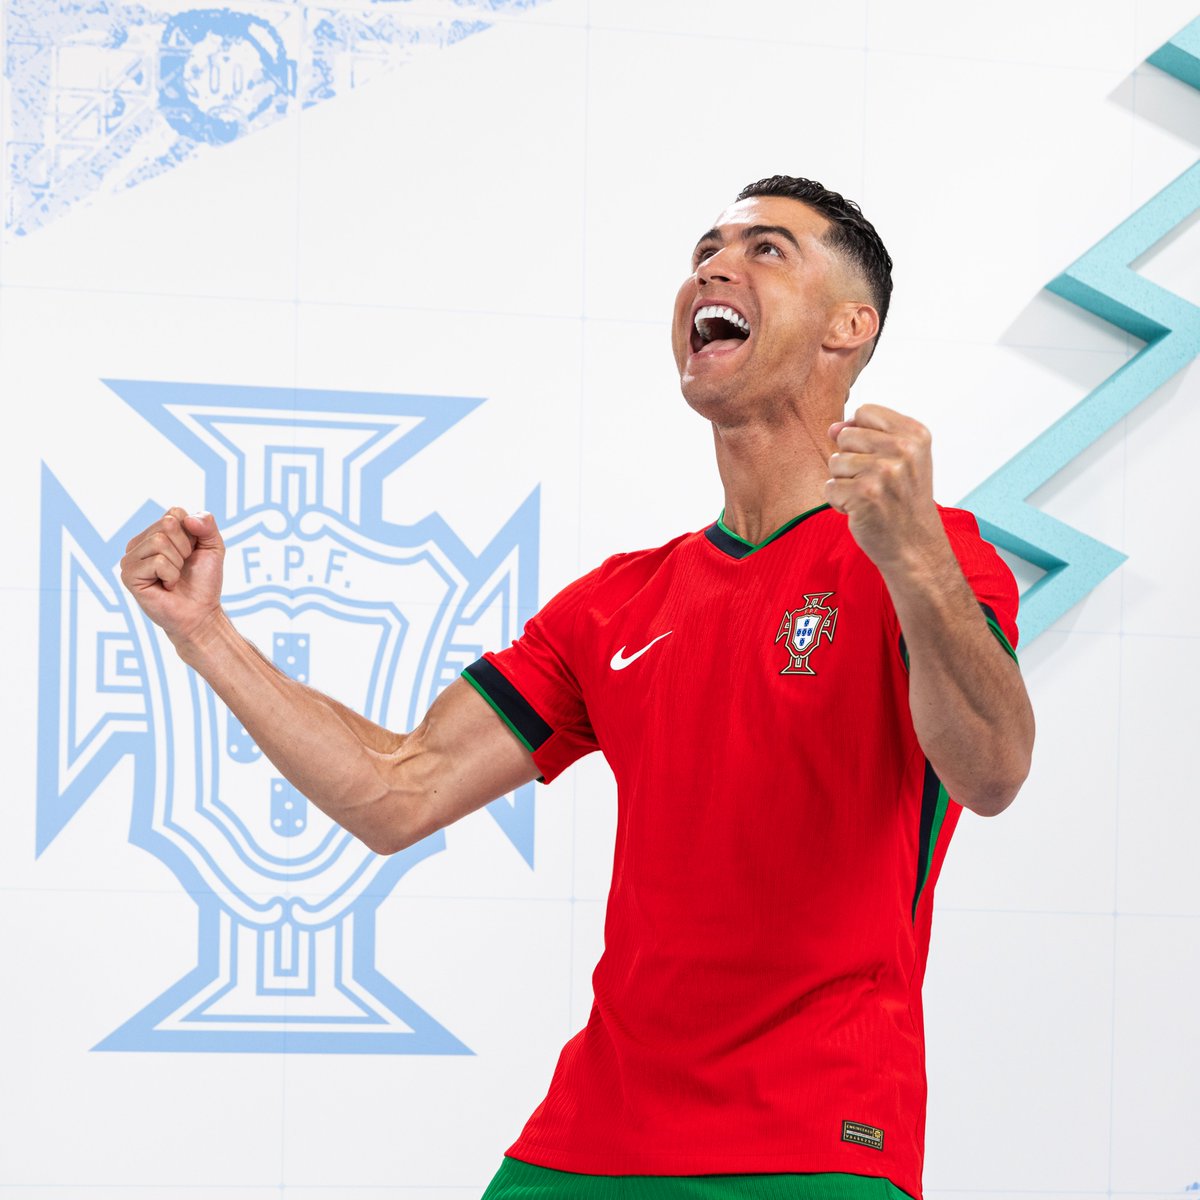 Orgulhoso por voltar a representar Portugal no Euro. Vamos com tudo! #PartilhaAPaixão